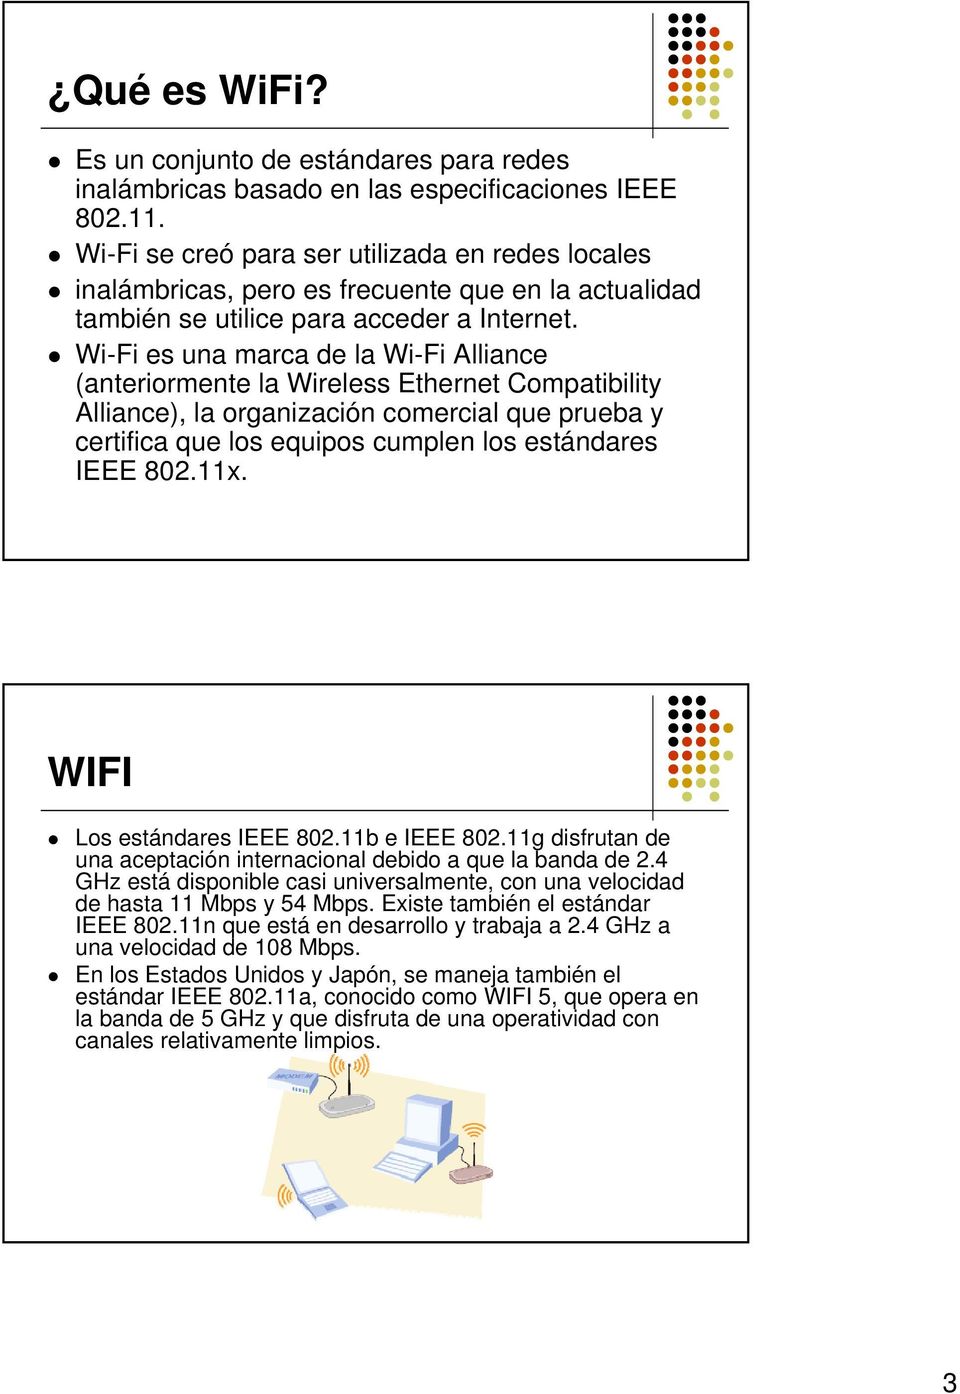 Wi-Fi es una marca de la Wi-Fi Alliance (anteriormente la Wireless Ethernet Compatibility Alliance), la organización comercial que prueba y certifica que los equipos cumplen los estándares IEEE 802.